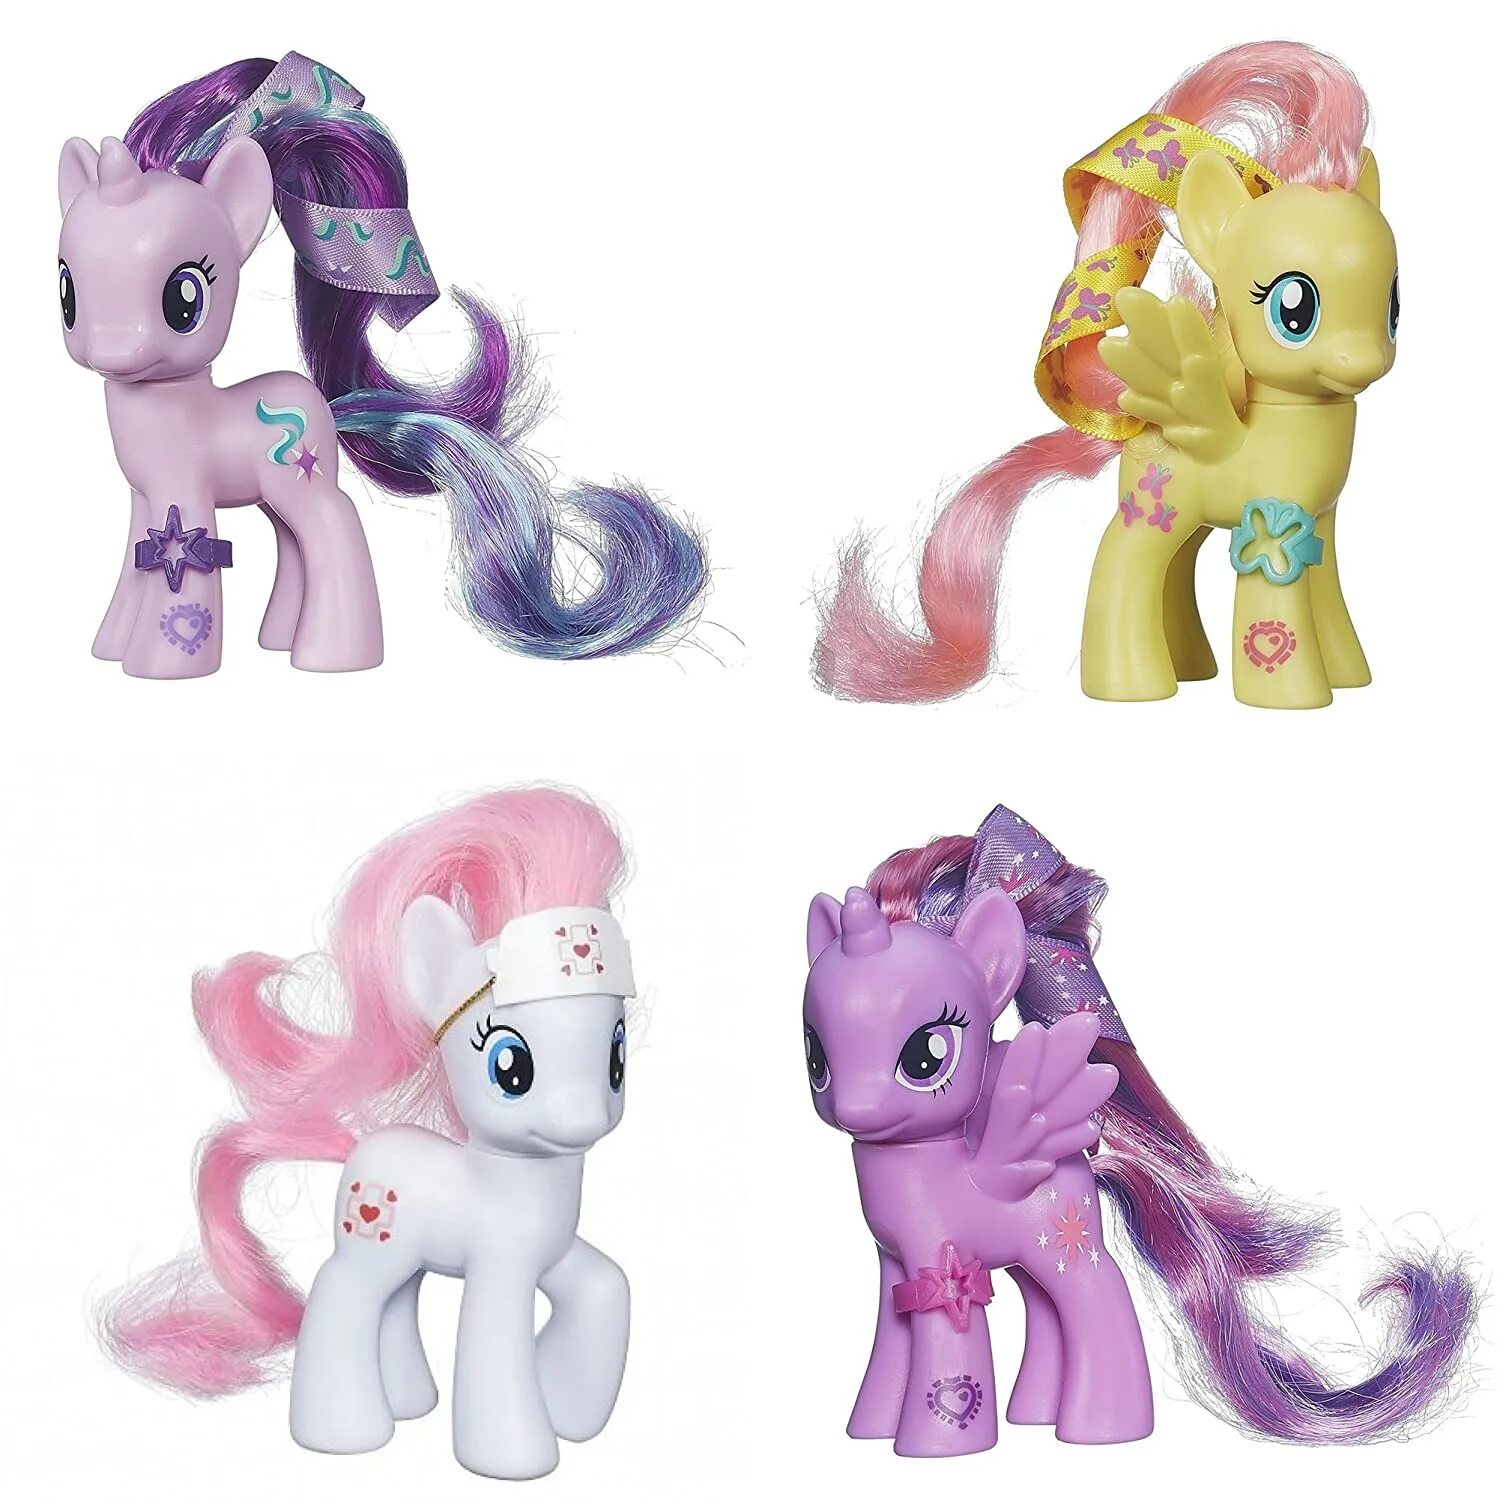 Литл пони хасбро. My little Pony Starlight игрушка. Хасбро игрушки пони. My little Pony игрушки Старлайт. Свит Сонг пони.